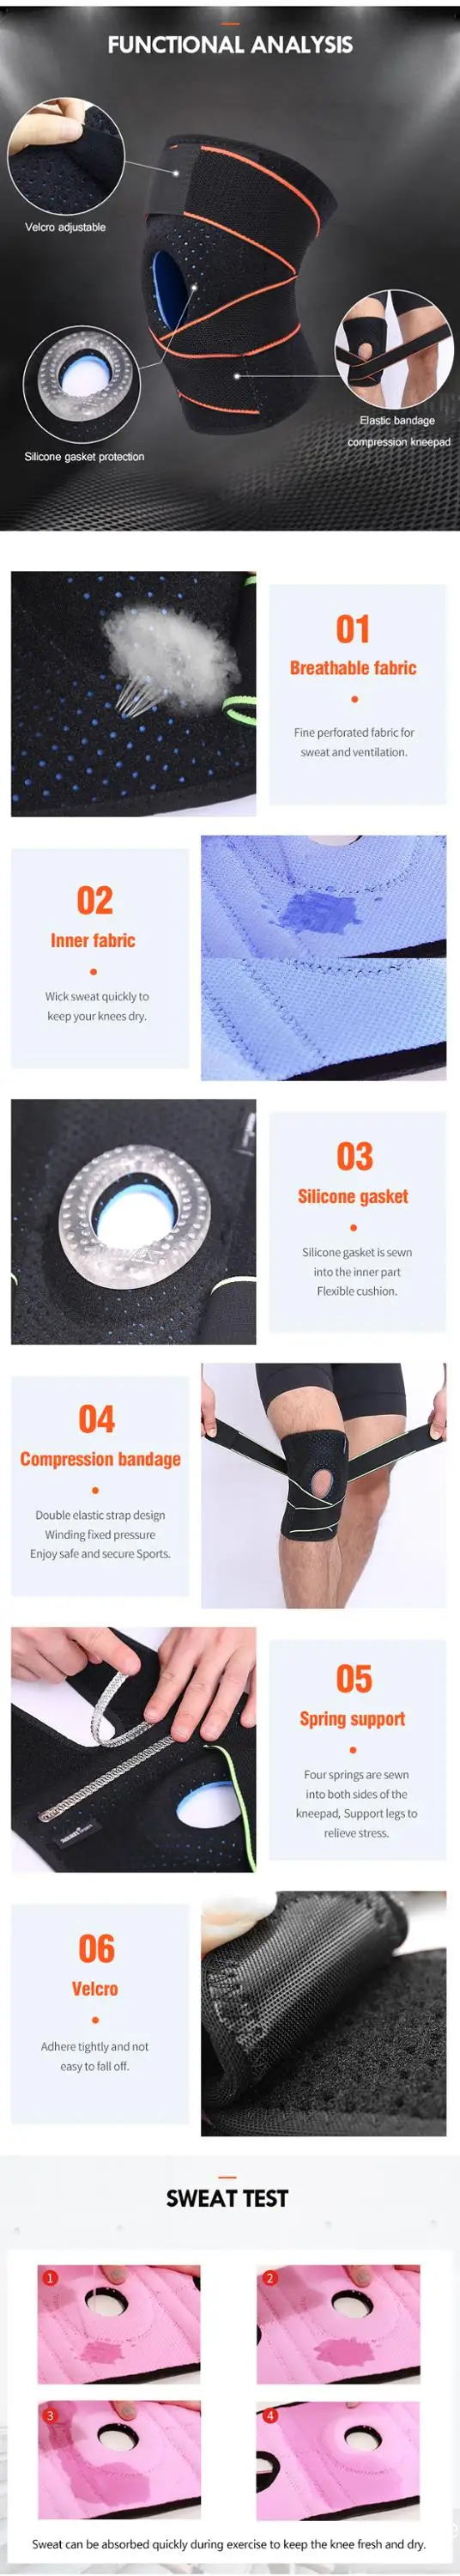 Enerup Wholesale Knee Leg Pad Belt Pad/Knee For Running Sport Work Knee Joint Support Spring Neoprene Orthosis